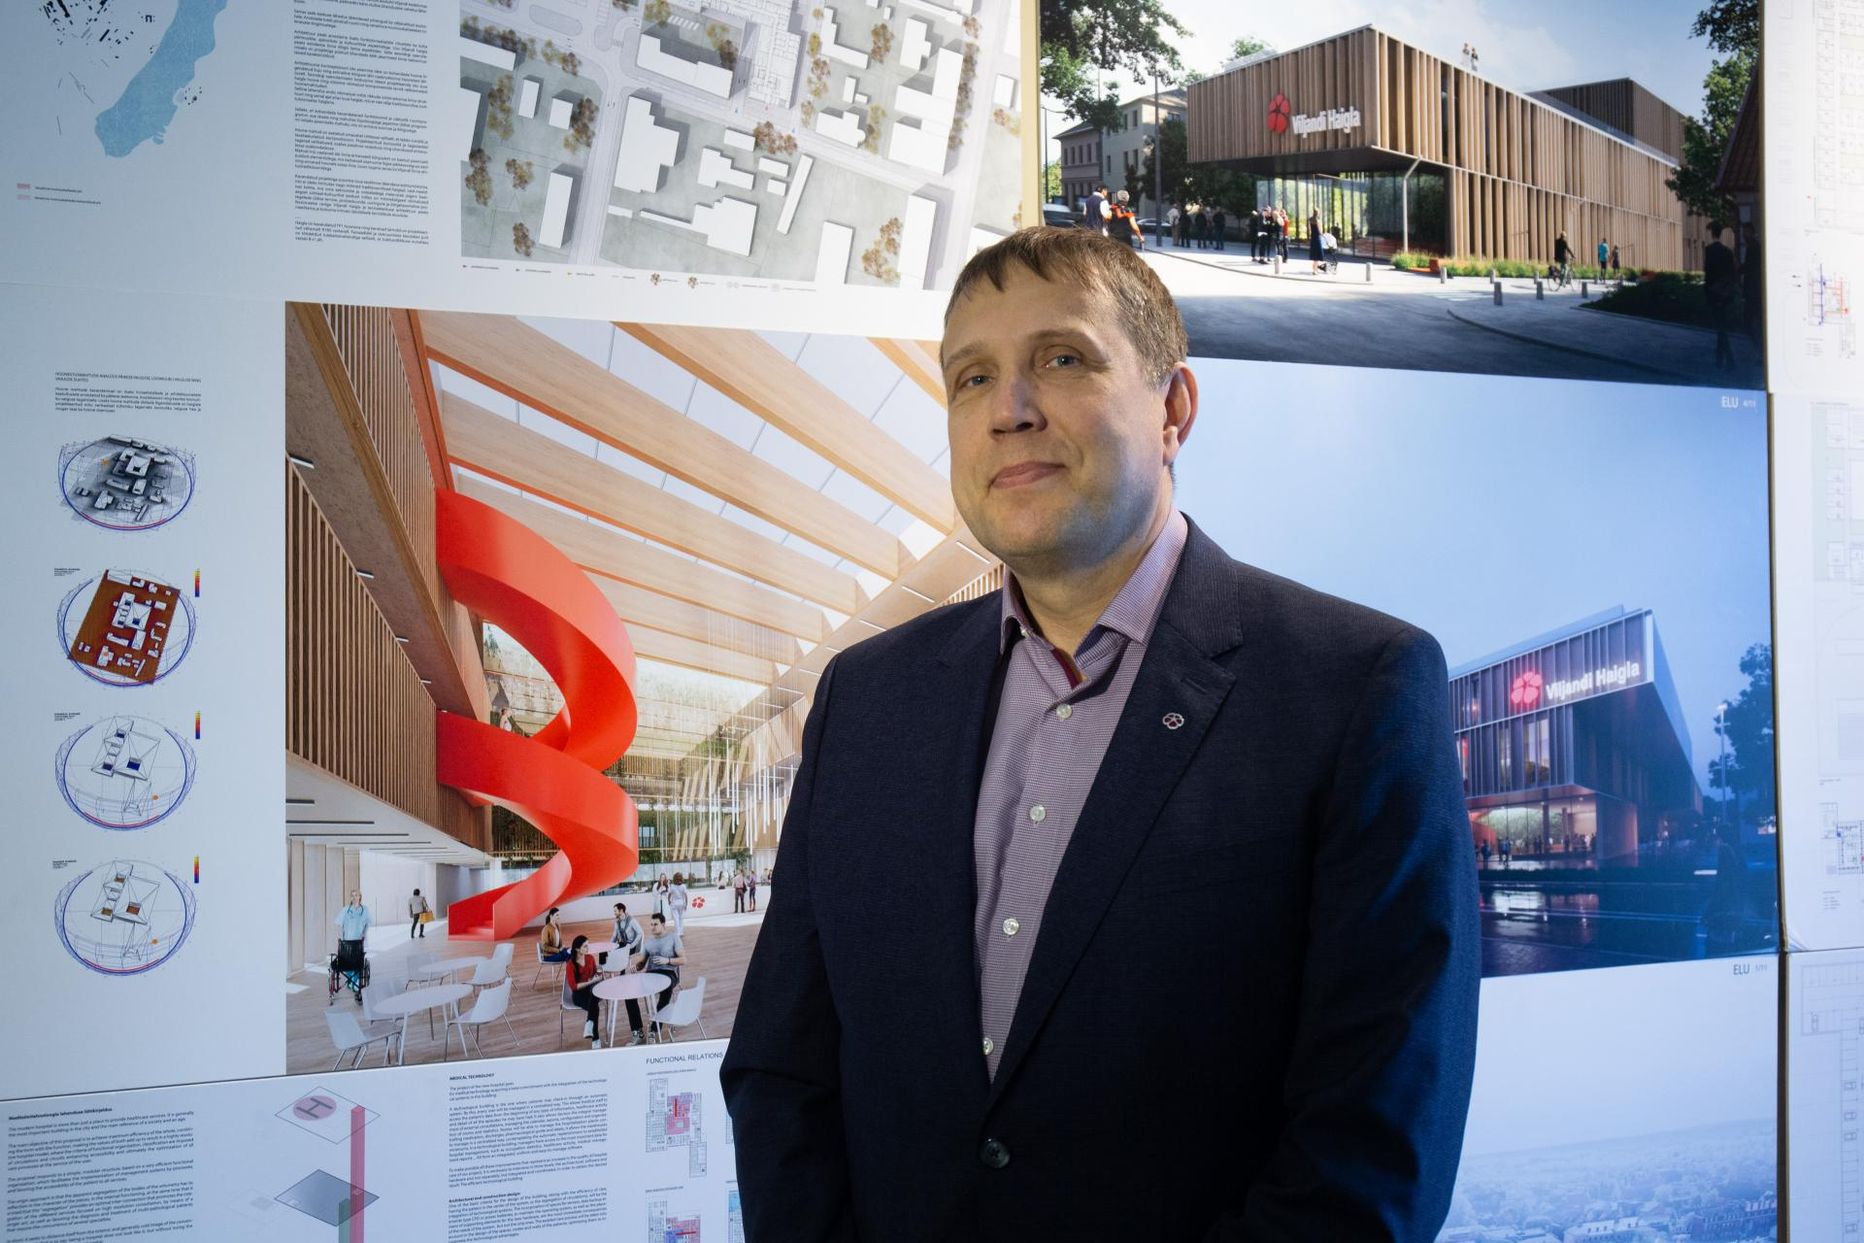 Kaks aastat tagasi märtsis kuulutas haiglajuht Priit Tampere välja uue haigla ja tervisekeskuse arhitektuurikonkursi võitja, kelleks sai DAGOpen. Uuel nädalal saab ta suure tõenäosusega minna ehitajaga lepingut sõlmima.